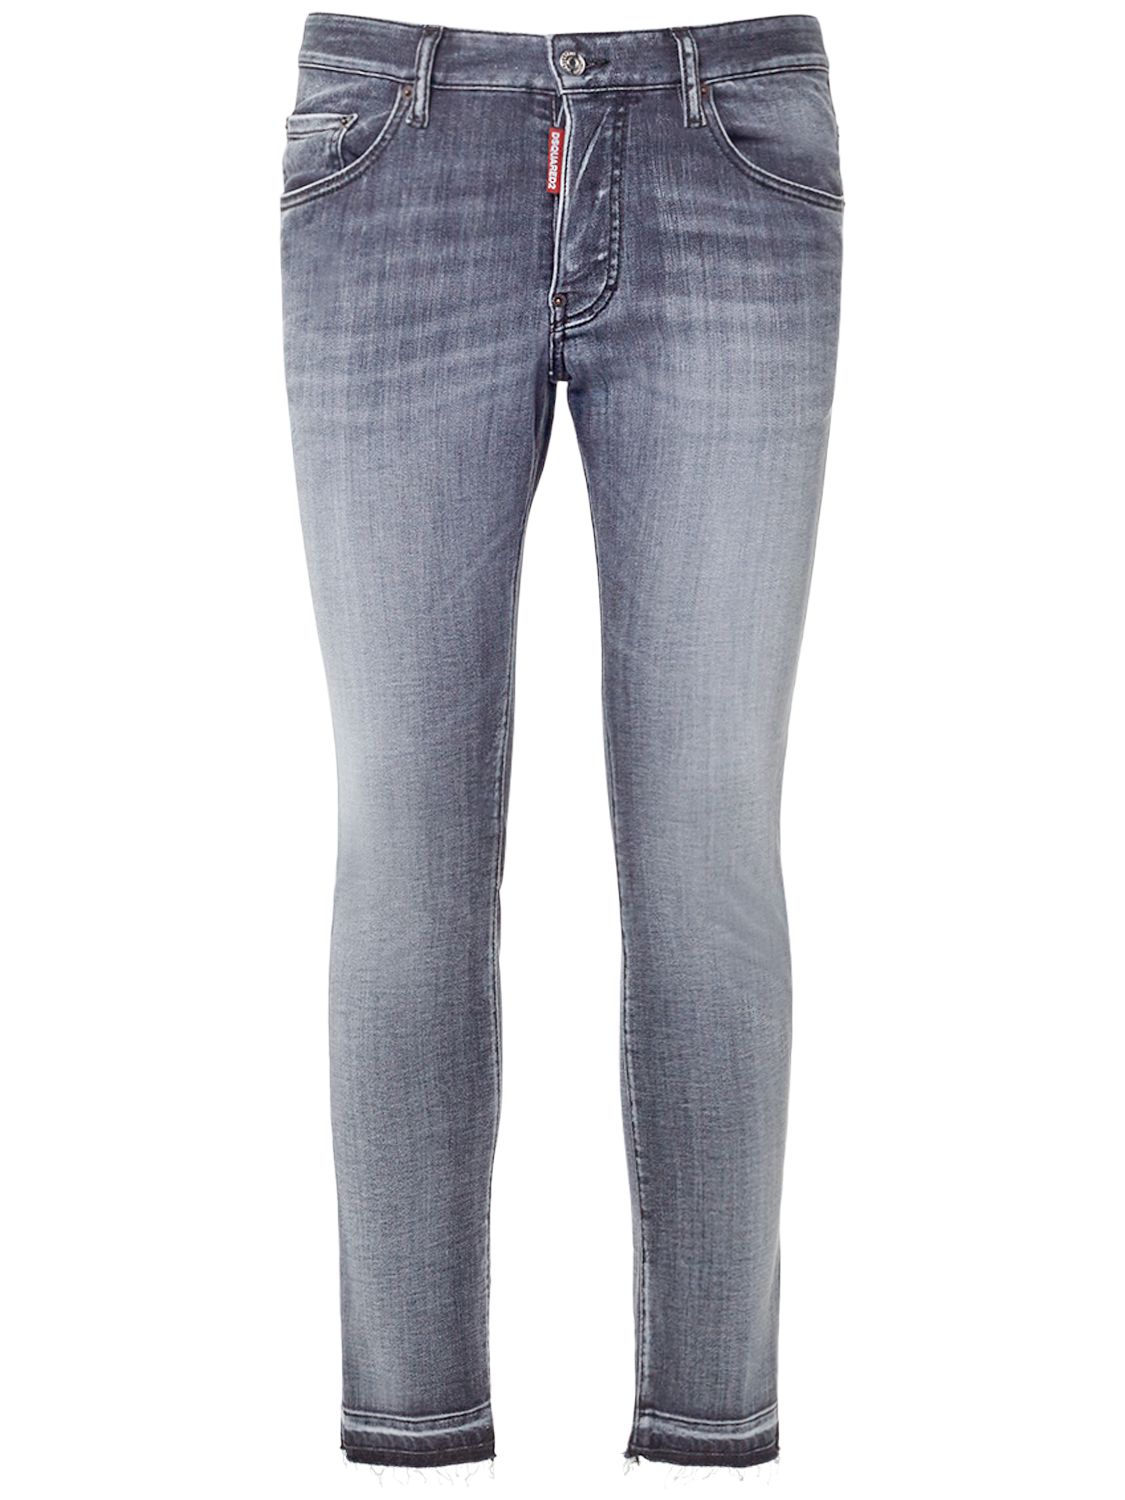 Jeans Super Twinky In Denim Stretch - DSQUARED2 - Modalova